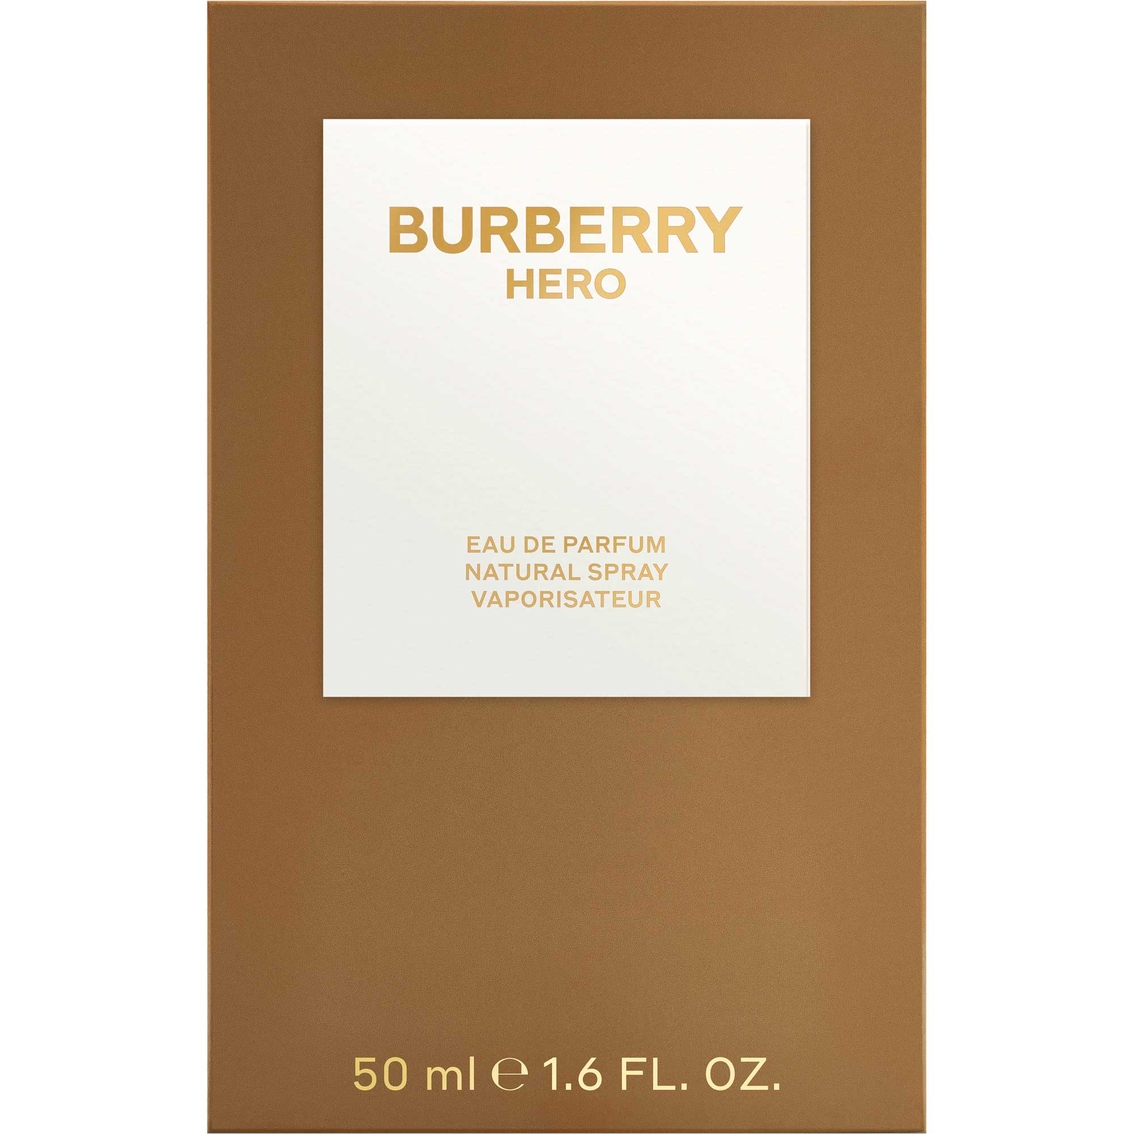 Burberry HERO Eau de Parfum Spray 1.6 oz. - Image 3 of 3